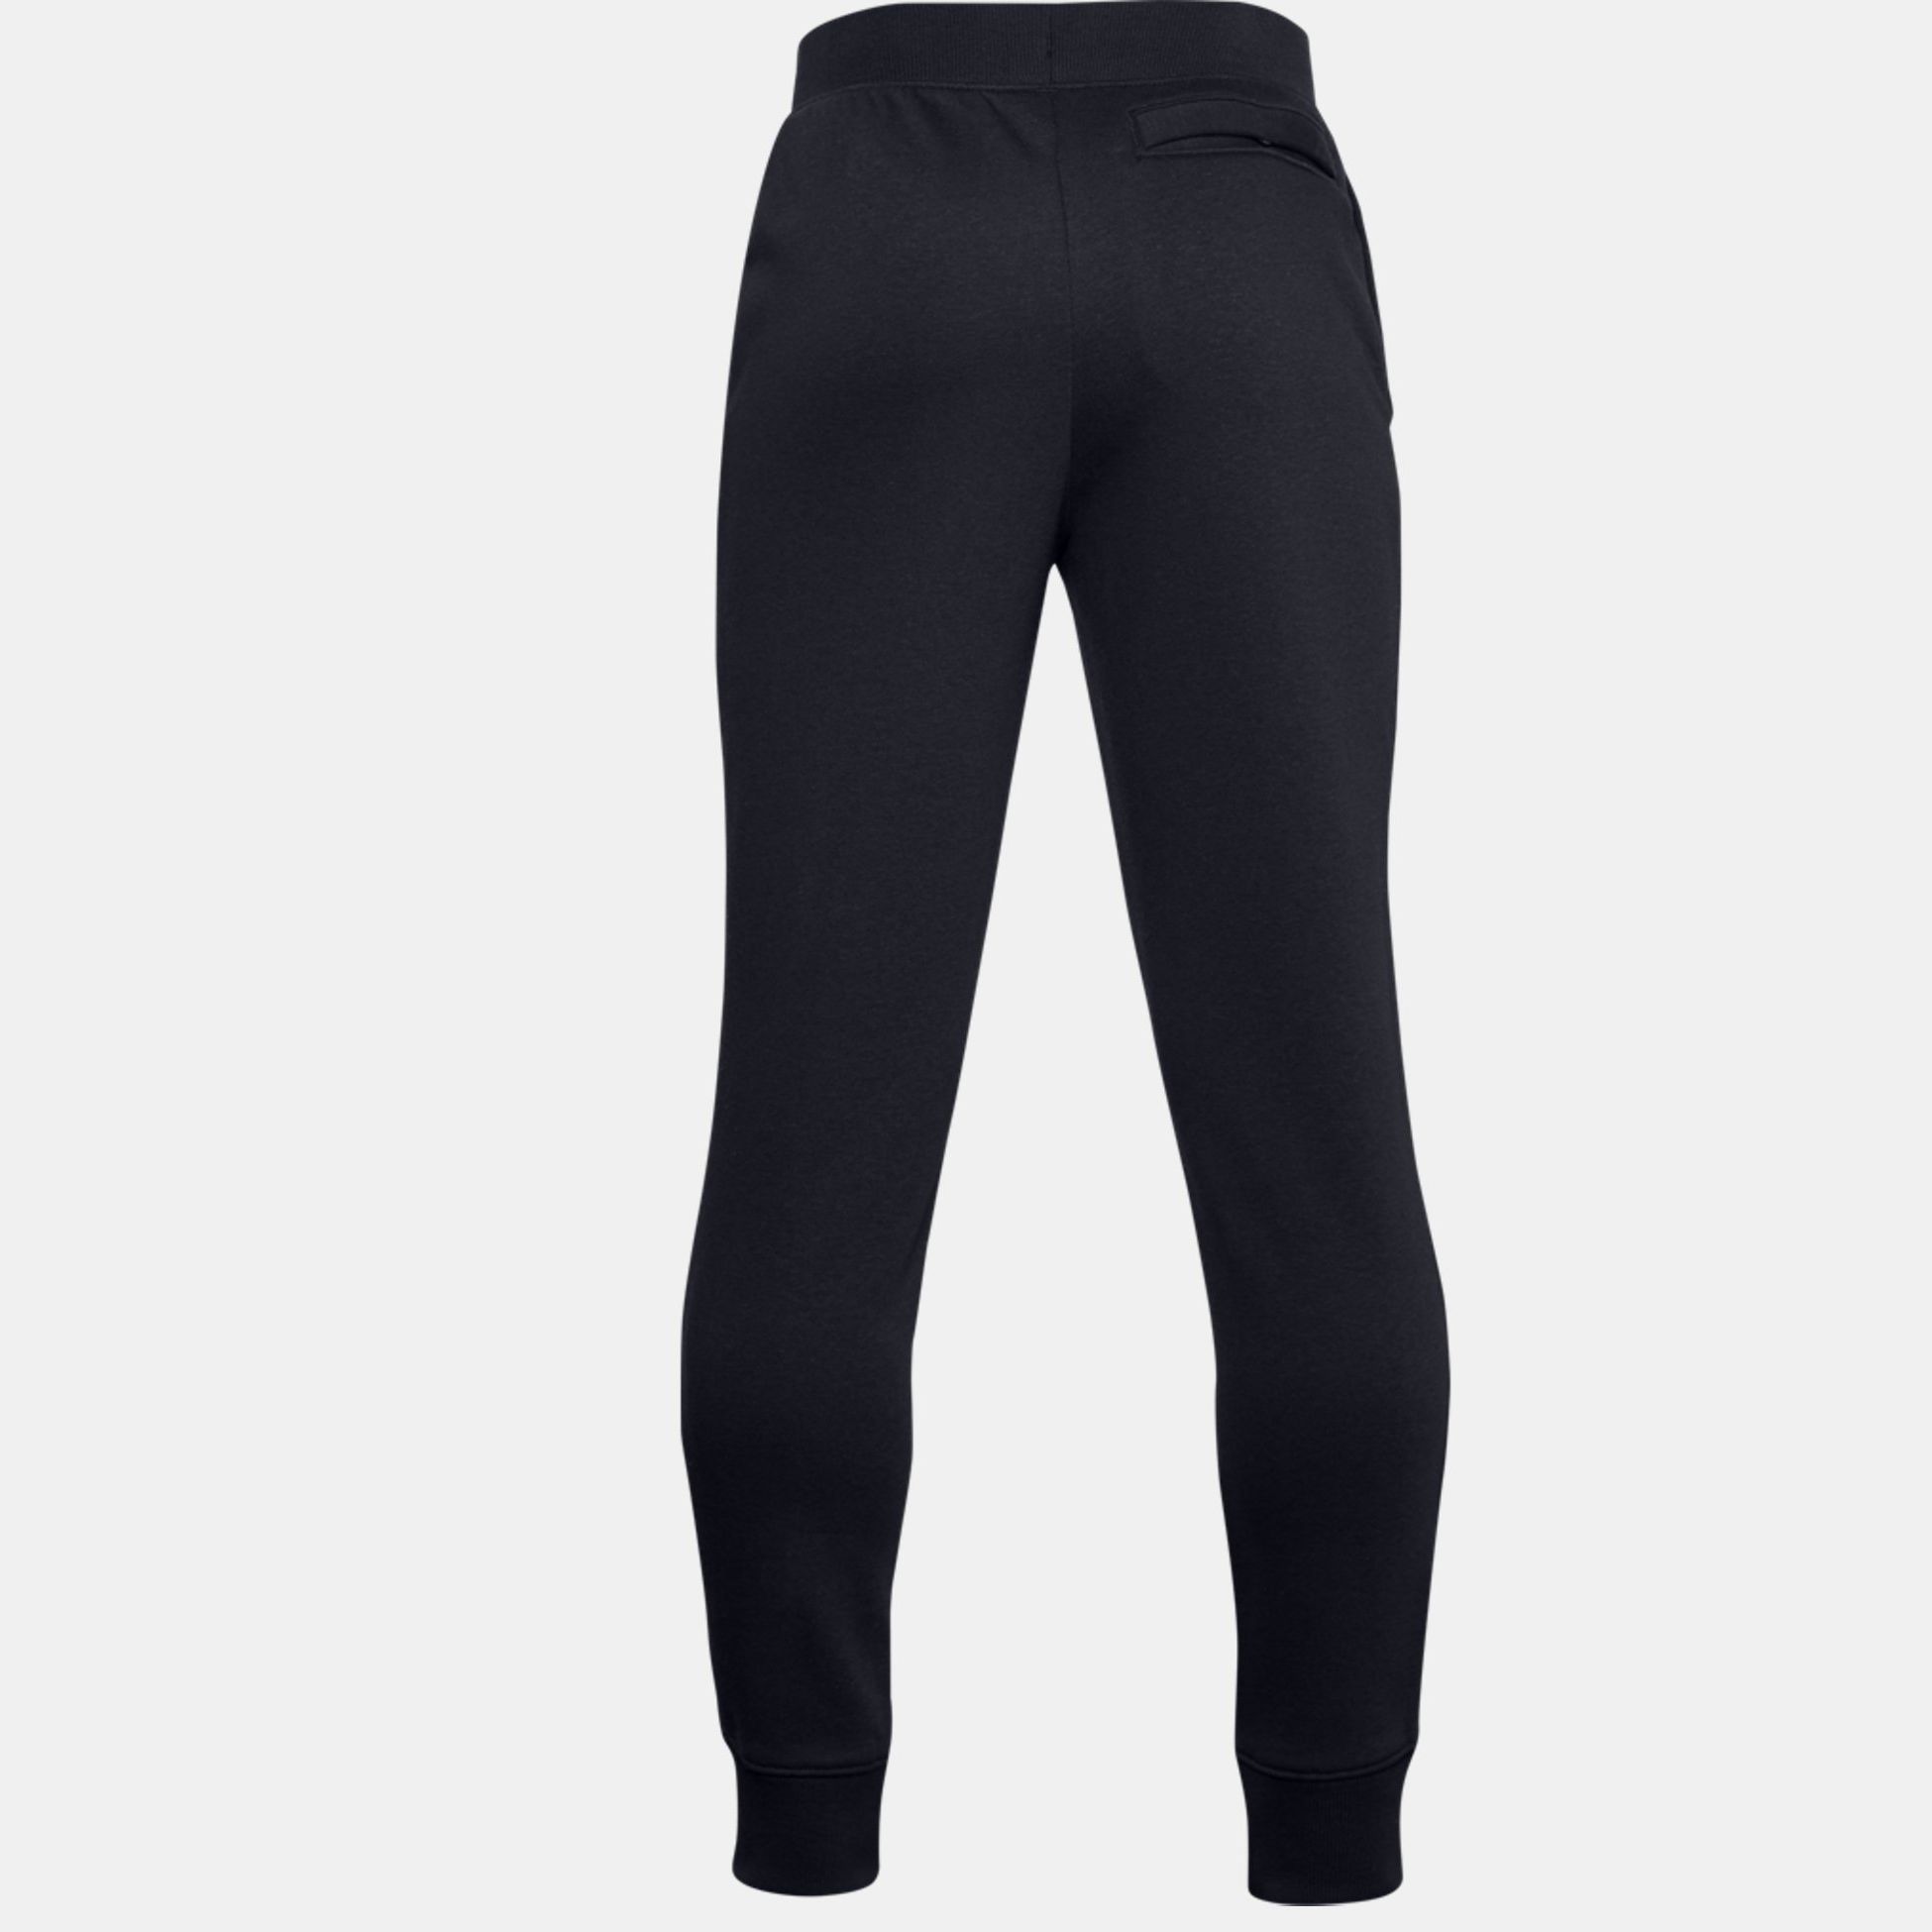 Joggers & Sweatpants -  under armour UA Rival Cotton Pants